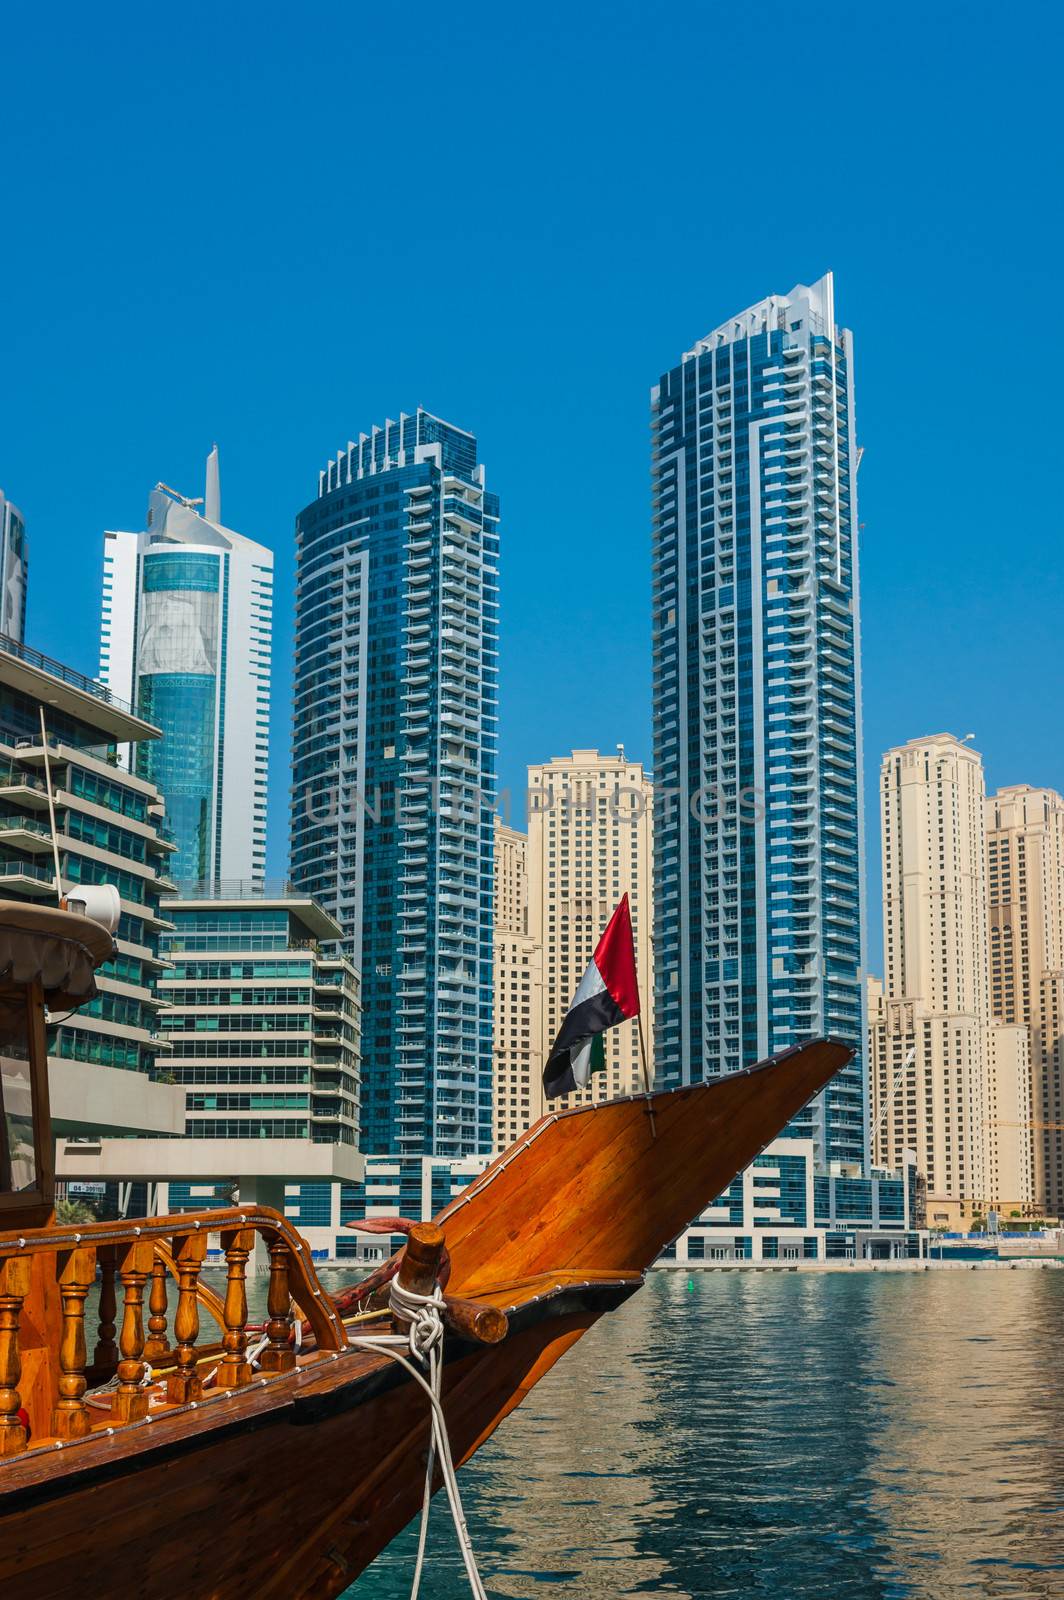 Yacht Club in Dubai Marina. UAE. November 16, 2012 by oleg_zhukov